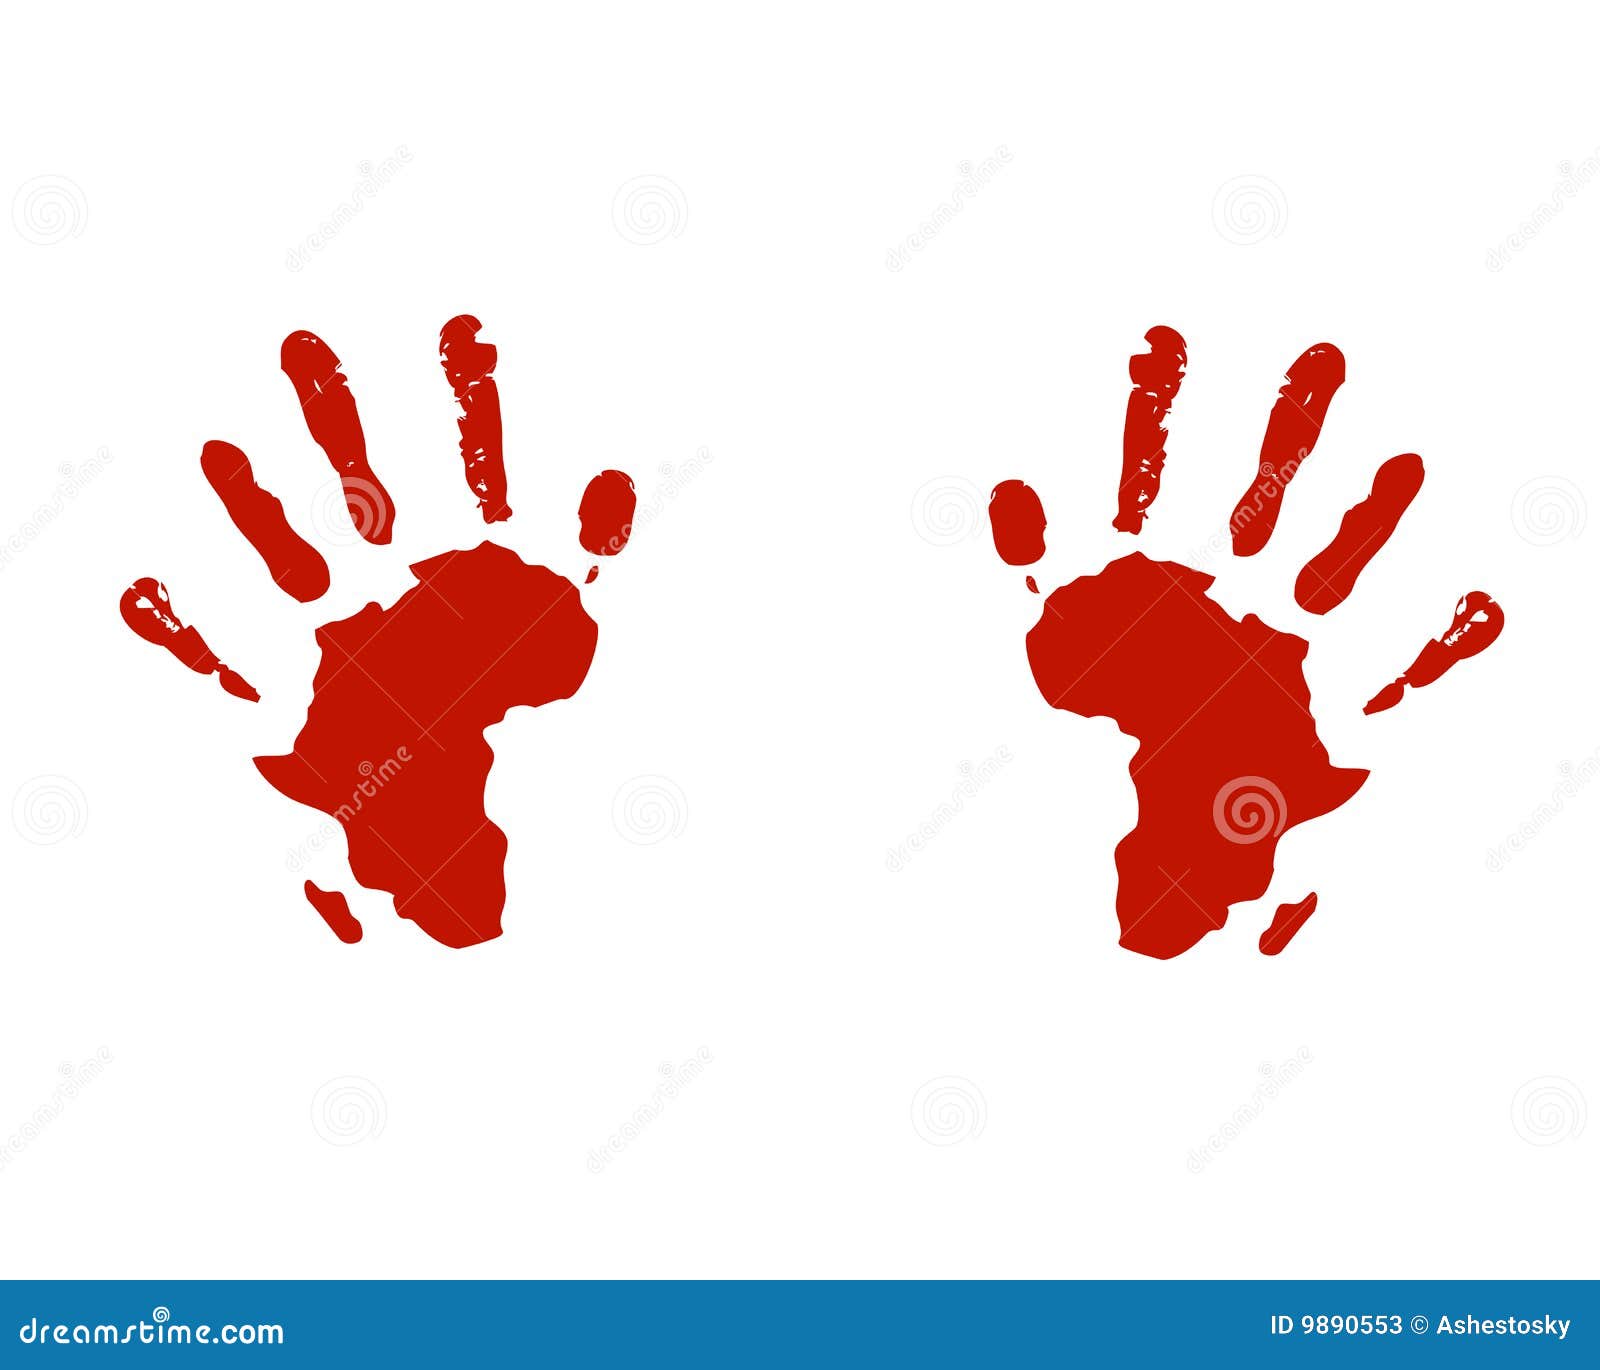 Hände von Afrika helfen Social. Vektorabbildung der Hand druckt mit Afrika-Kartenschattenbild als Werbung für Nutzengebrauch in Richtung zu den afrikanischen Leuten, Verstand zu helfen und zu verschieben